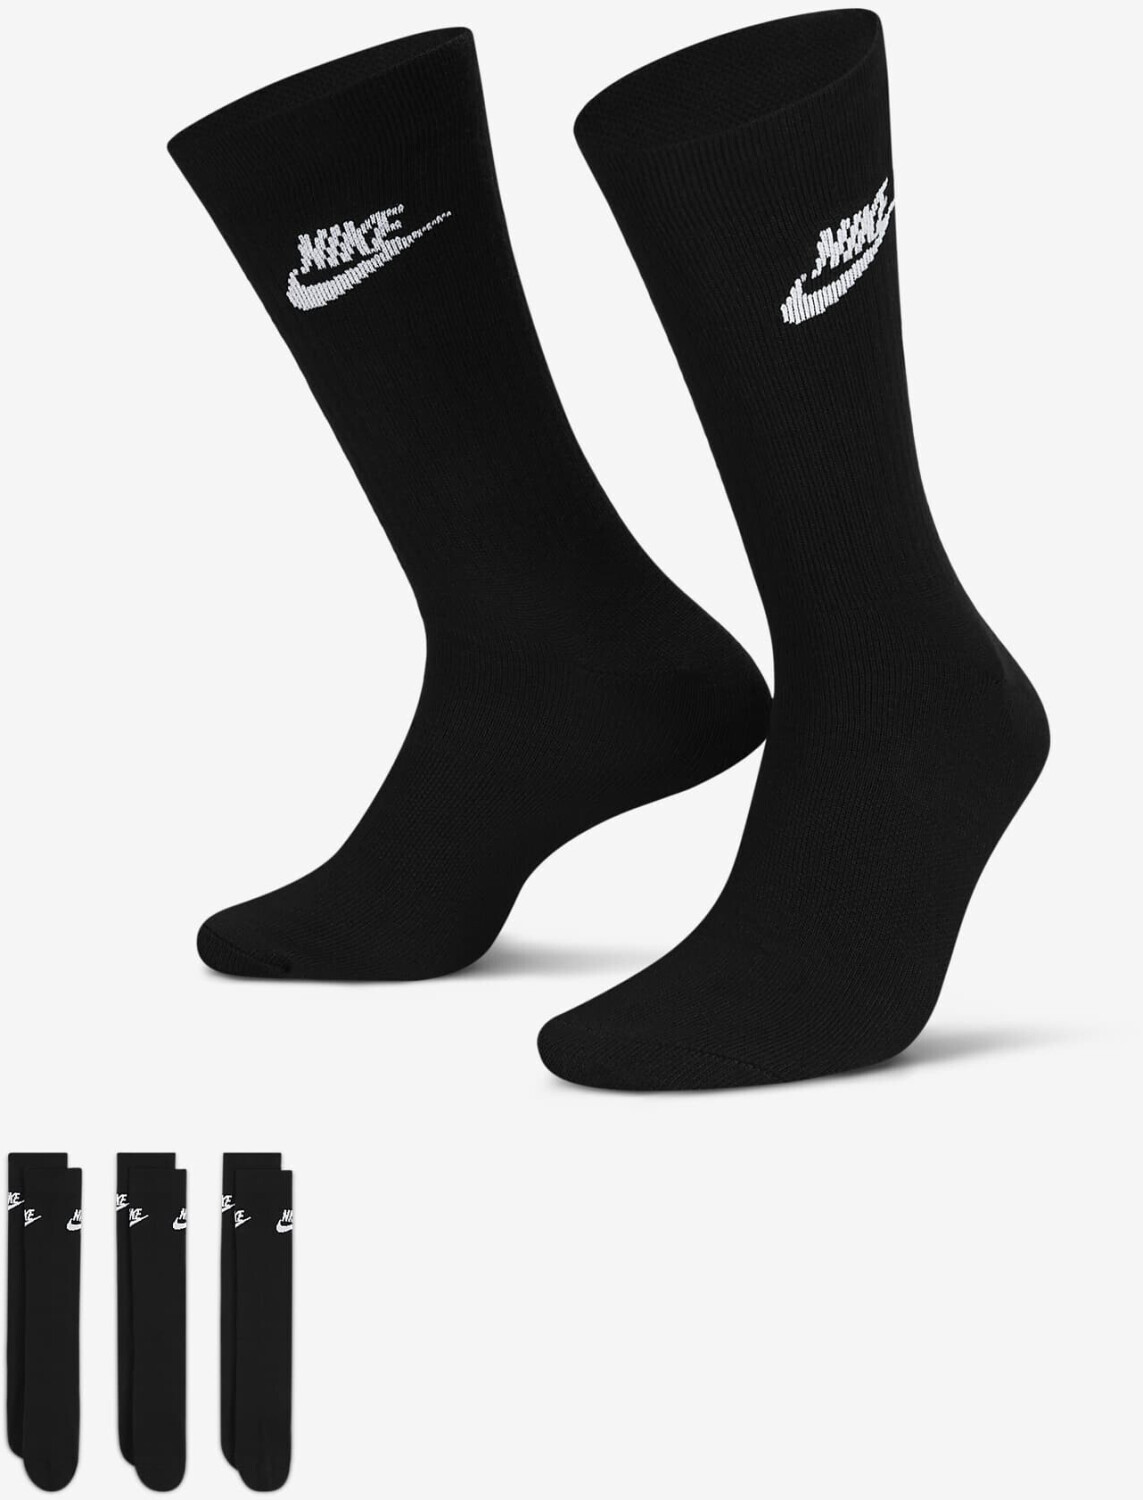 Nike Chaussettes Elite x3 Blanc/noir Taille Chaussettes XL (46-50)